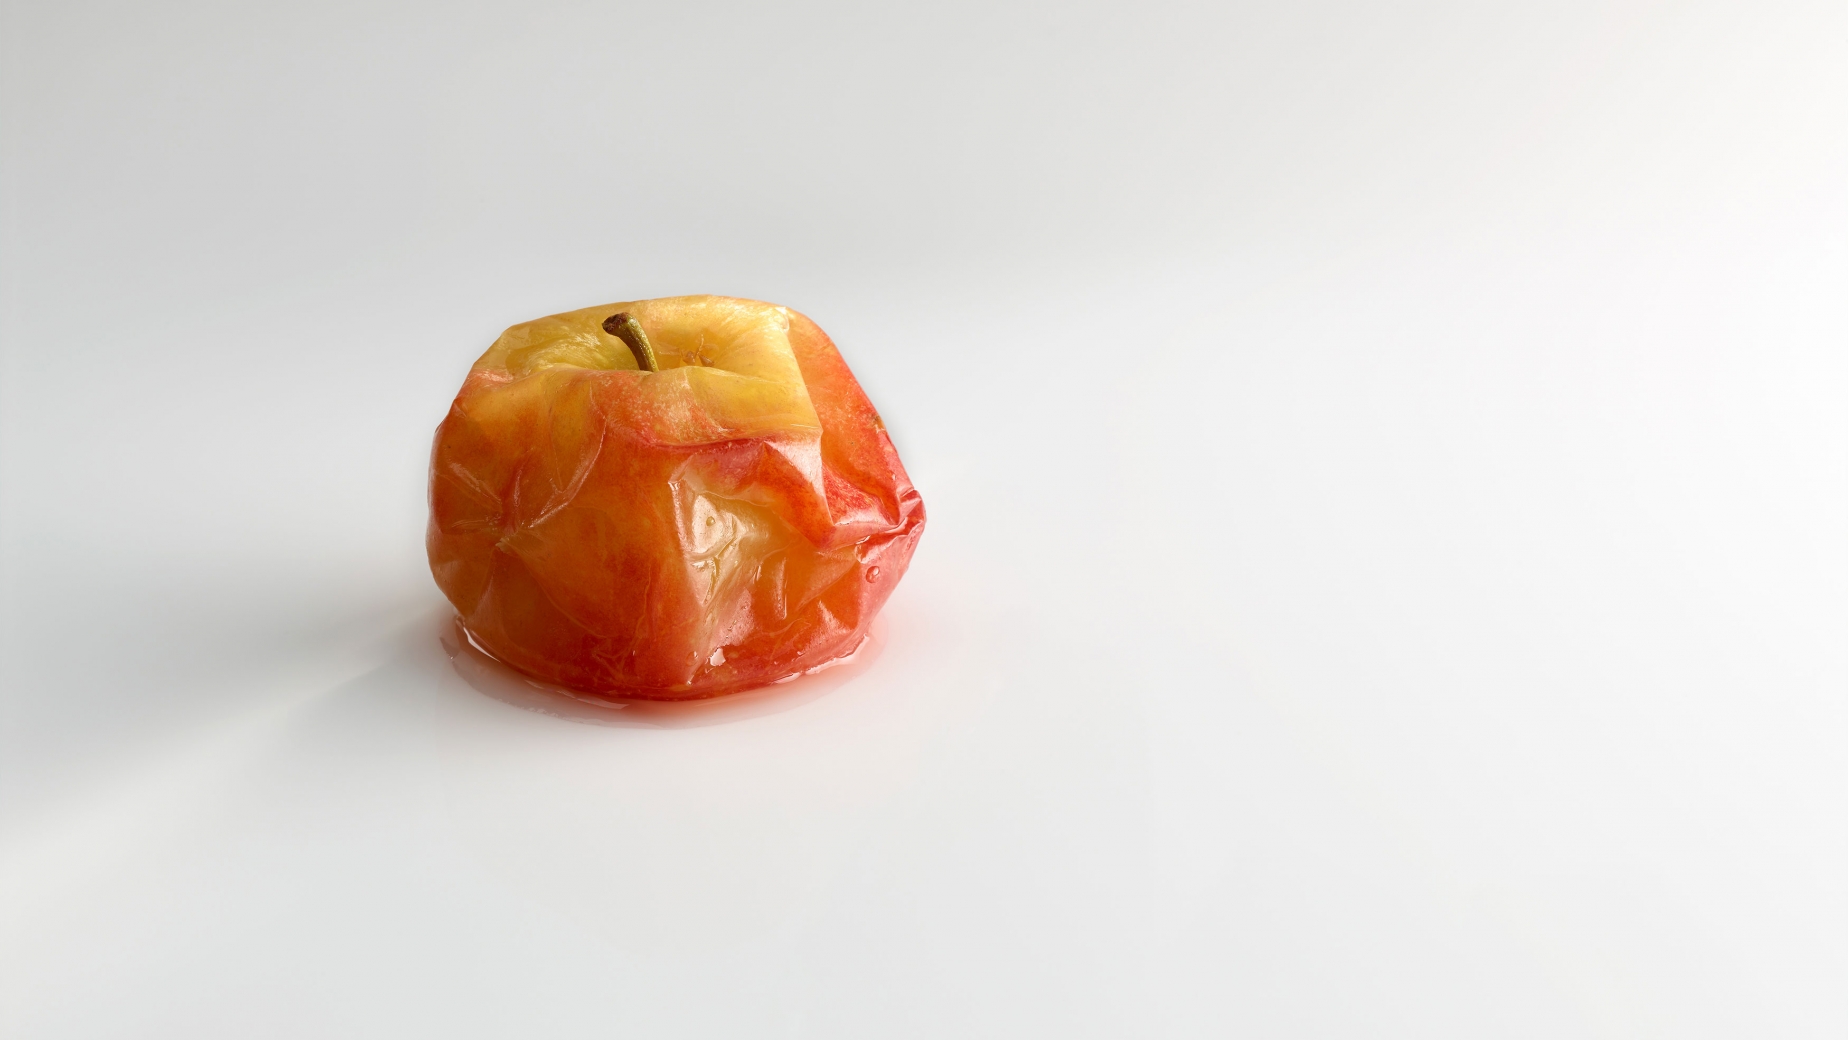 Apple compote in its skin.
PHOTO: José Luis López de Zubiría/ Mugaritz 